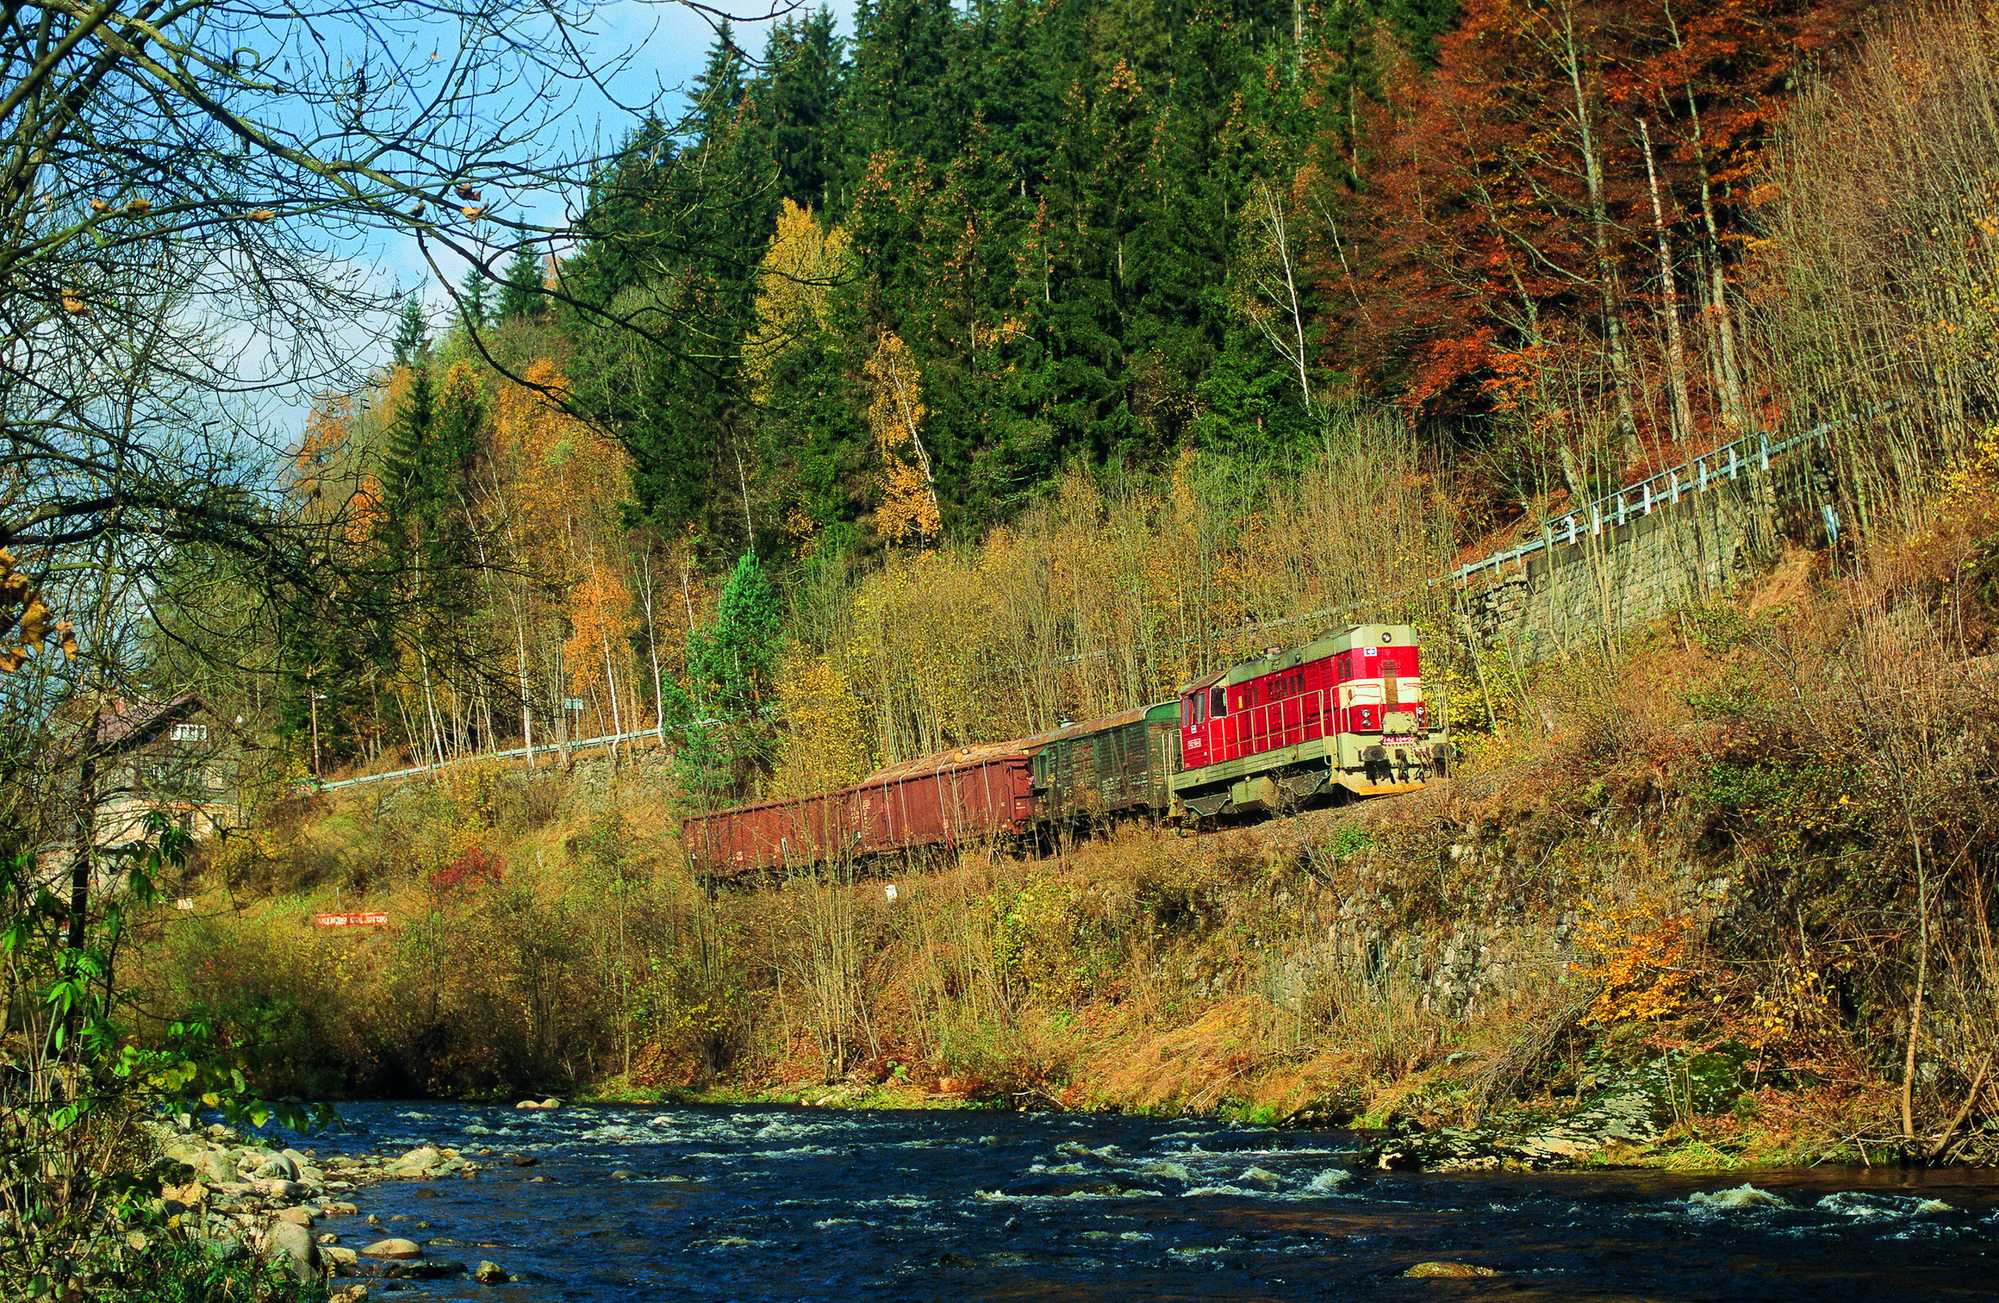 Diesen aus mit Holzstämmen beladenen vierachsigen Wagen gebildeten Güterzug fotografierte Andreas W. Petrak im Oktober 2009 zwischen Rokytnice und Jablonec nad Jizerou im idyllischen Isertal.